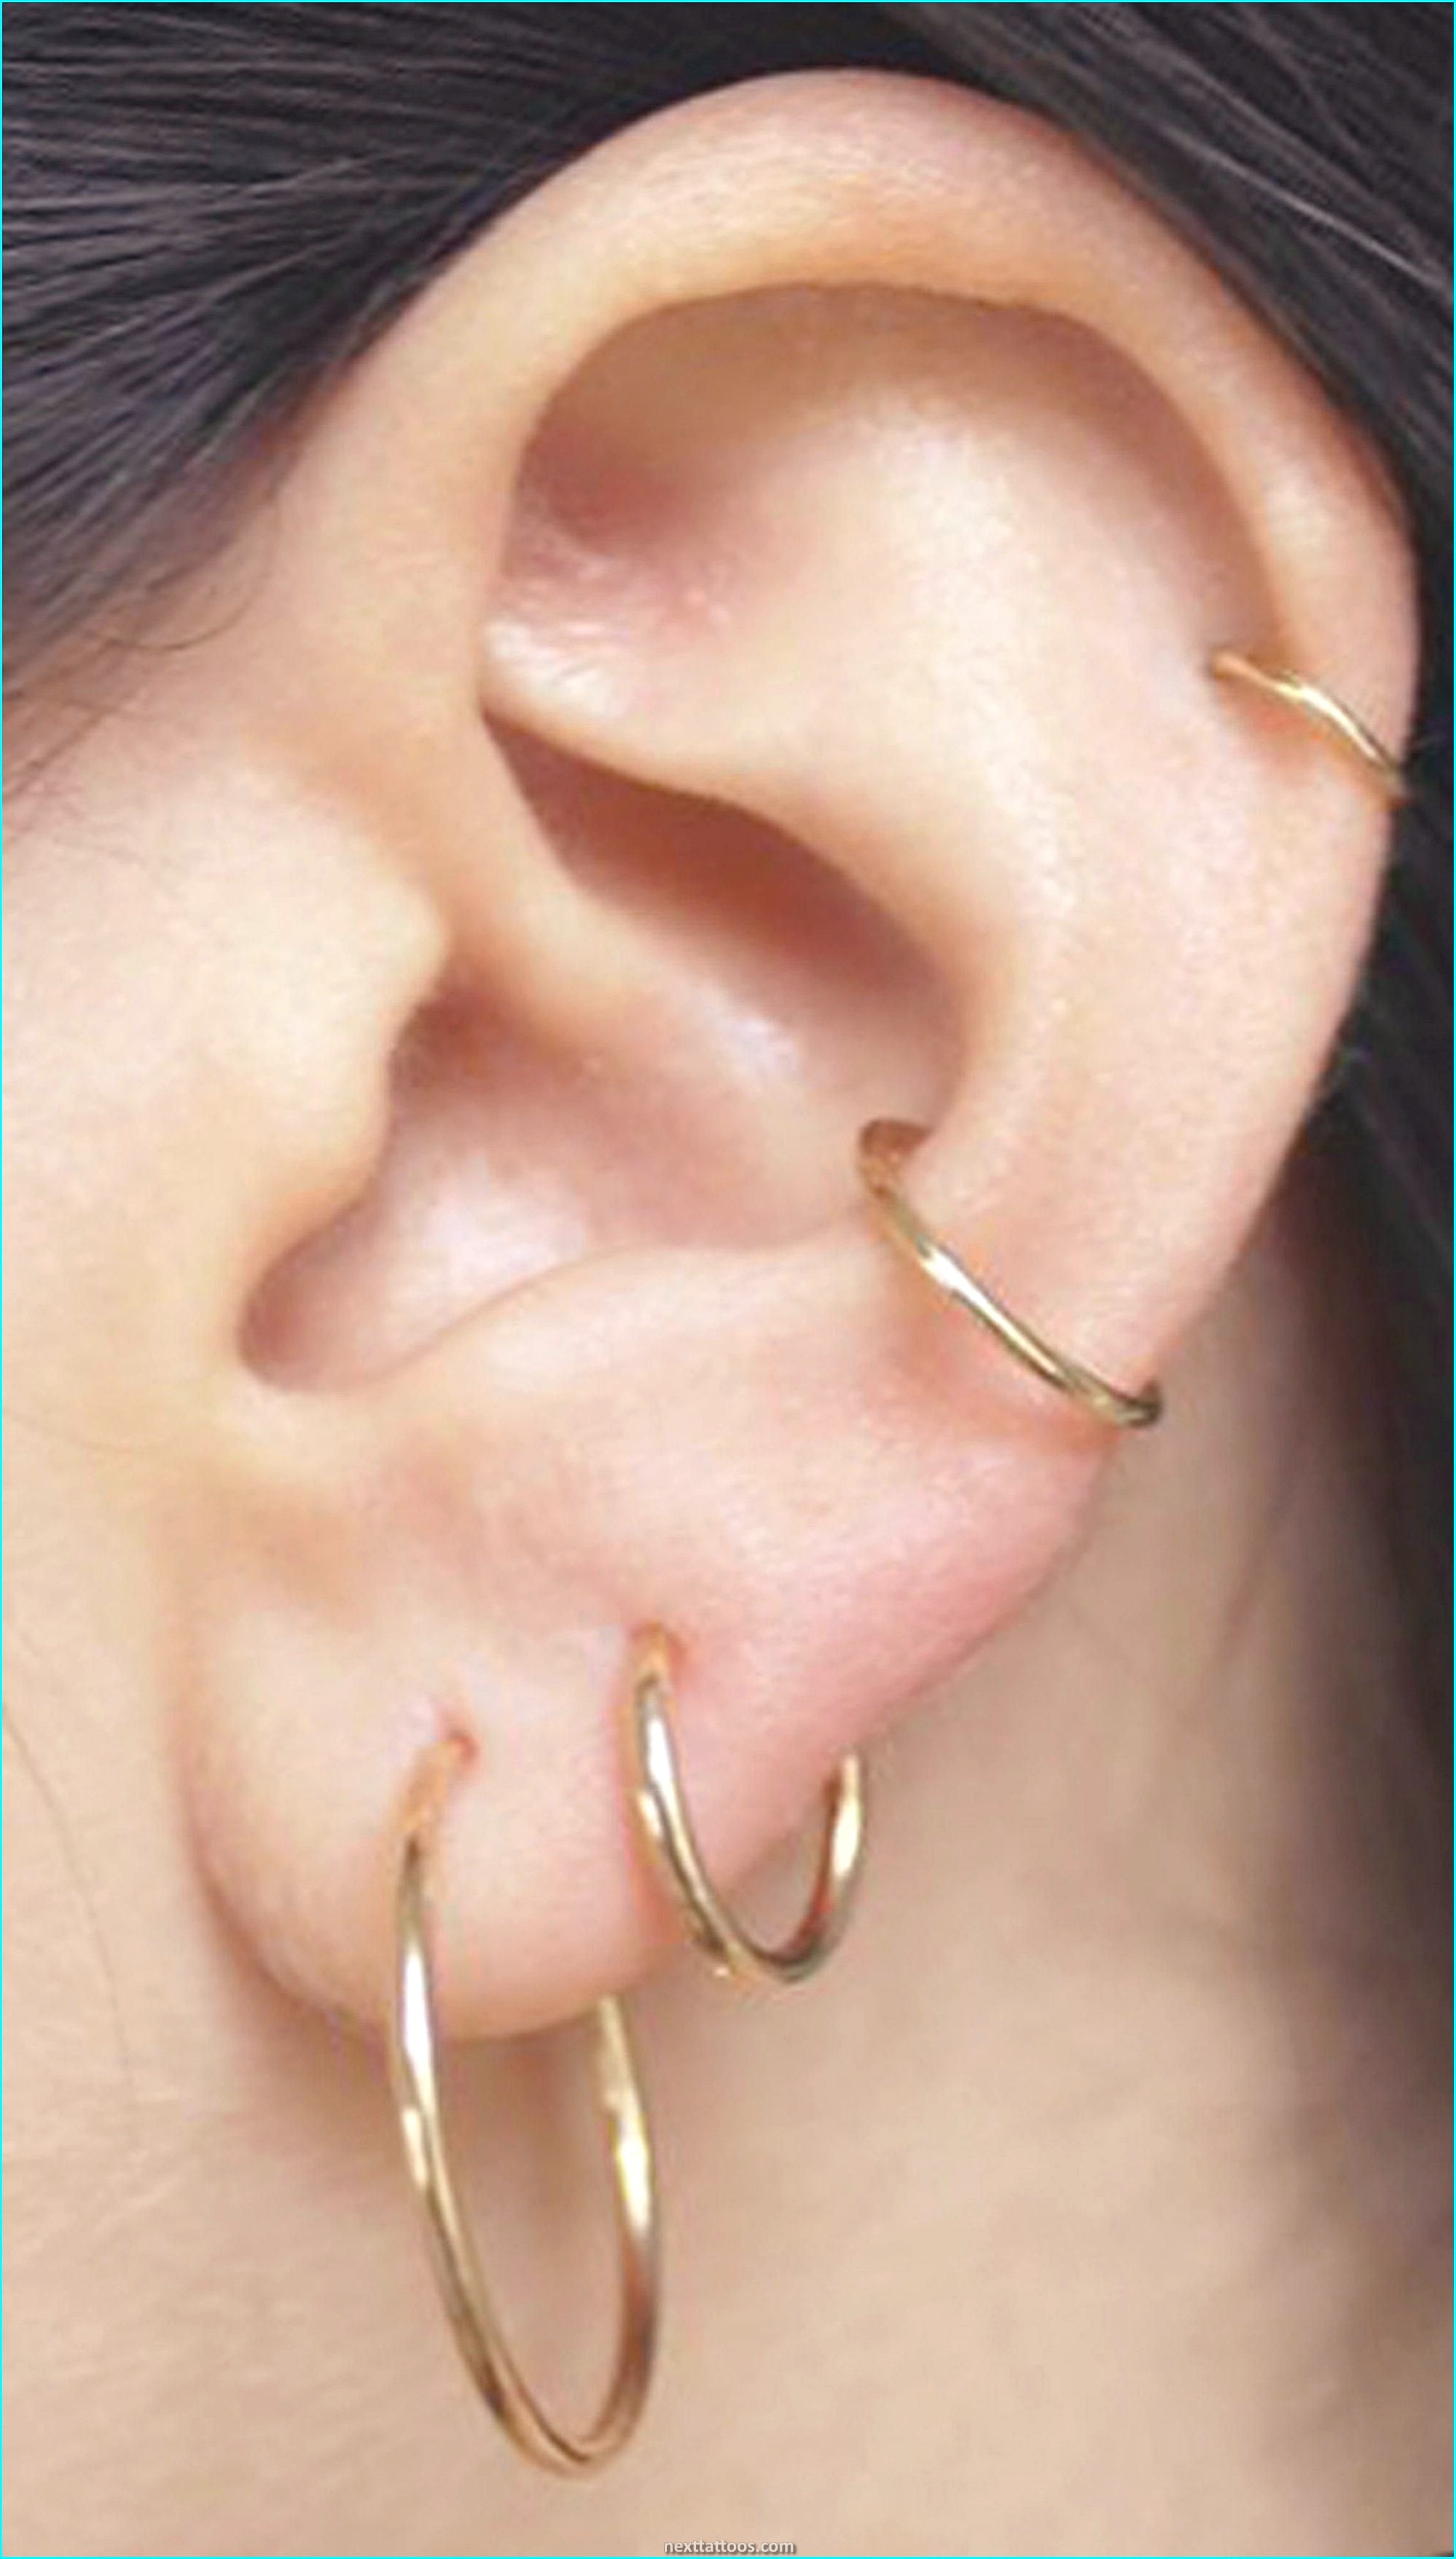 Multiple Ear Piercing Ideas